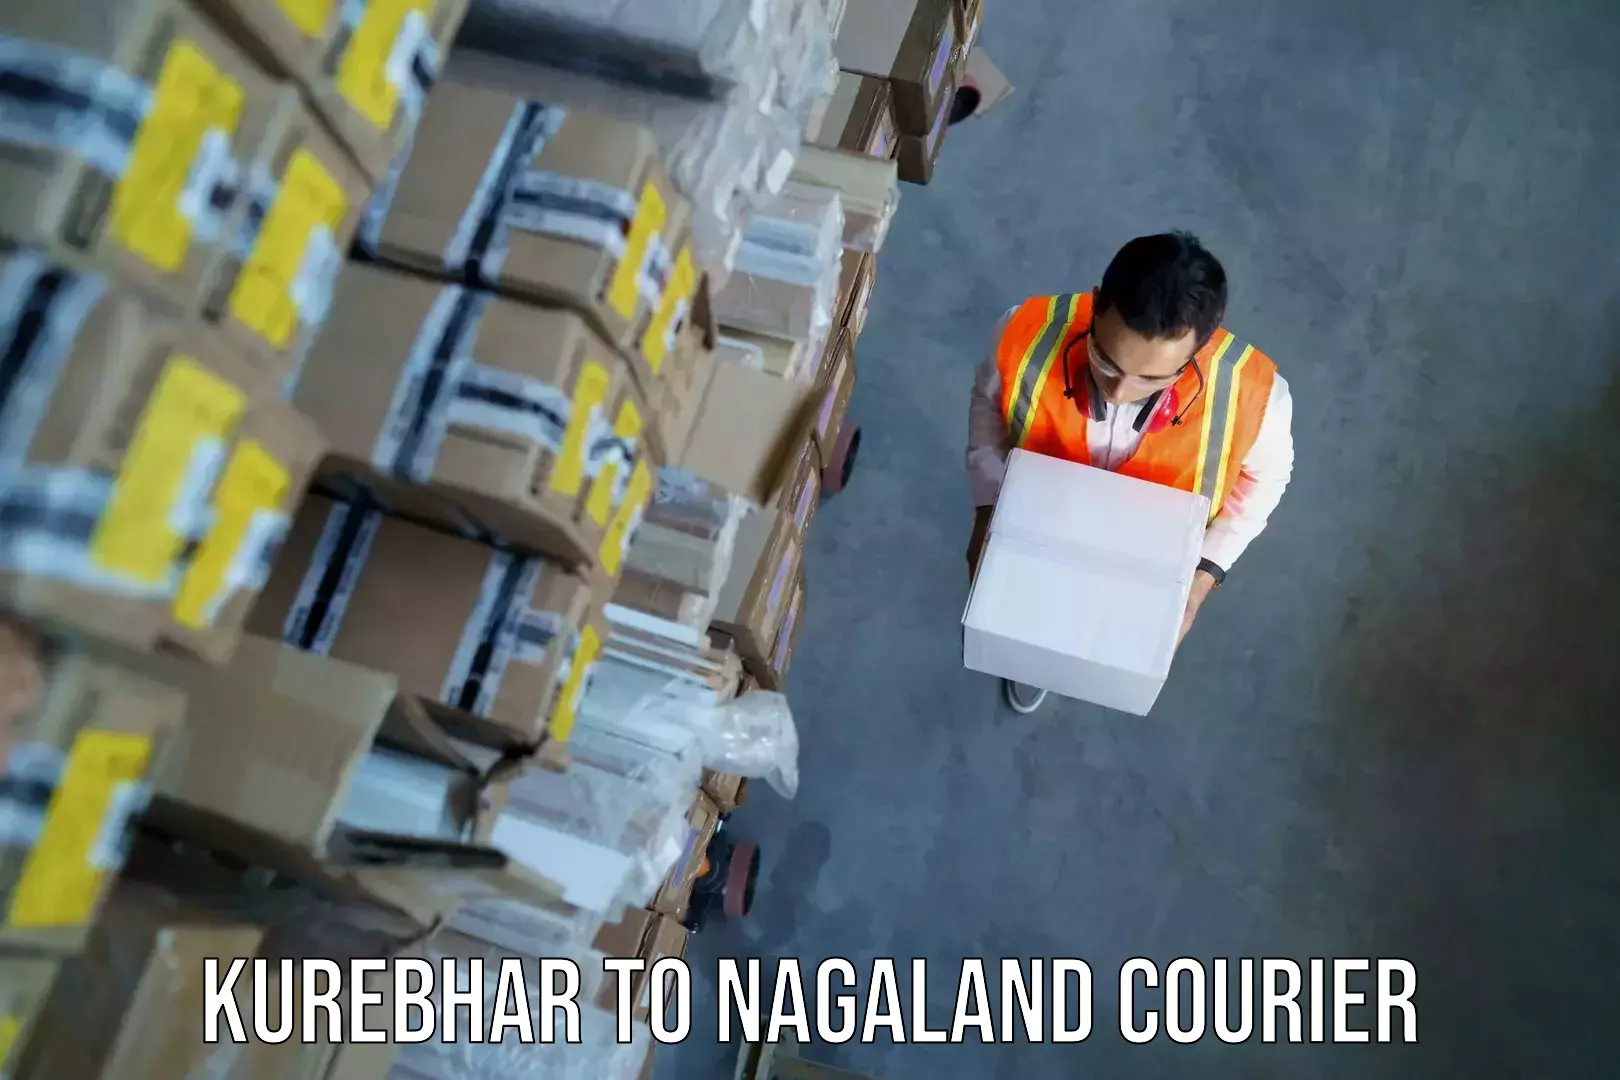 Baggage shipping experts Kurebhar to Nagaland